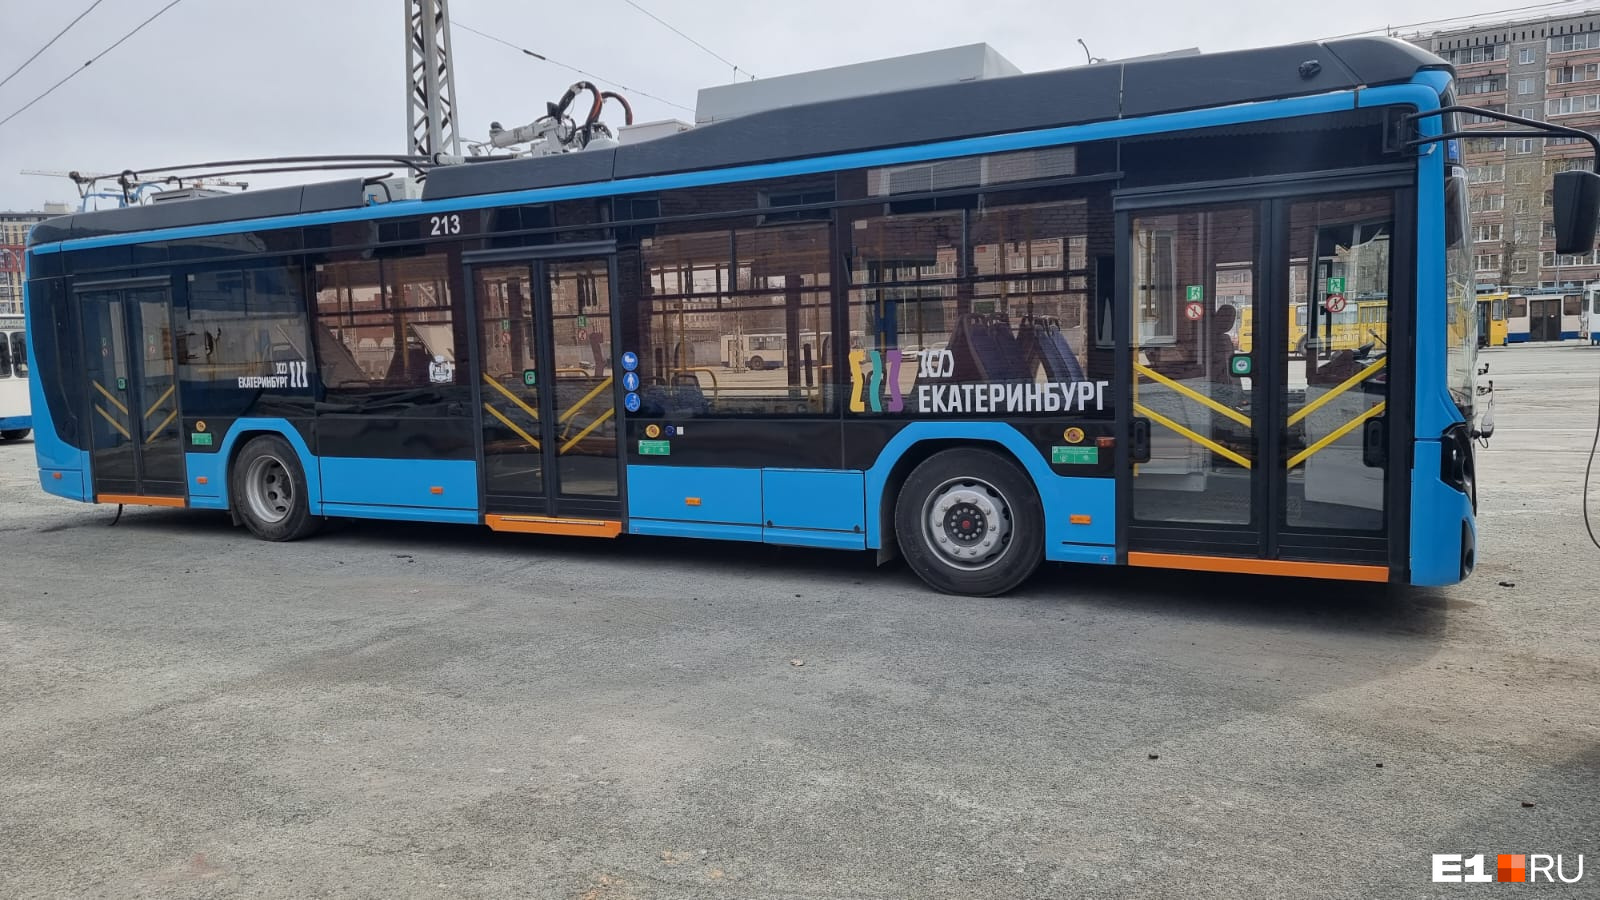 Когда и на какой маршрут выйдут новые белорусские троллейбусы в  Екатеринбурге - 26 апреля 2023 - e1.ru